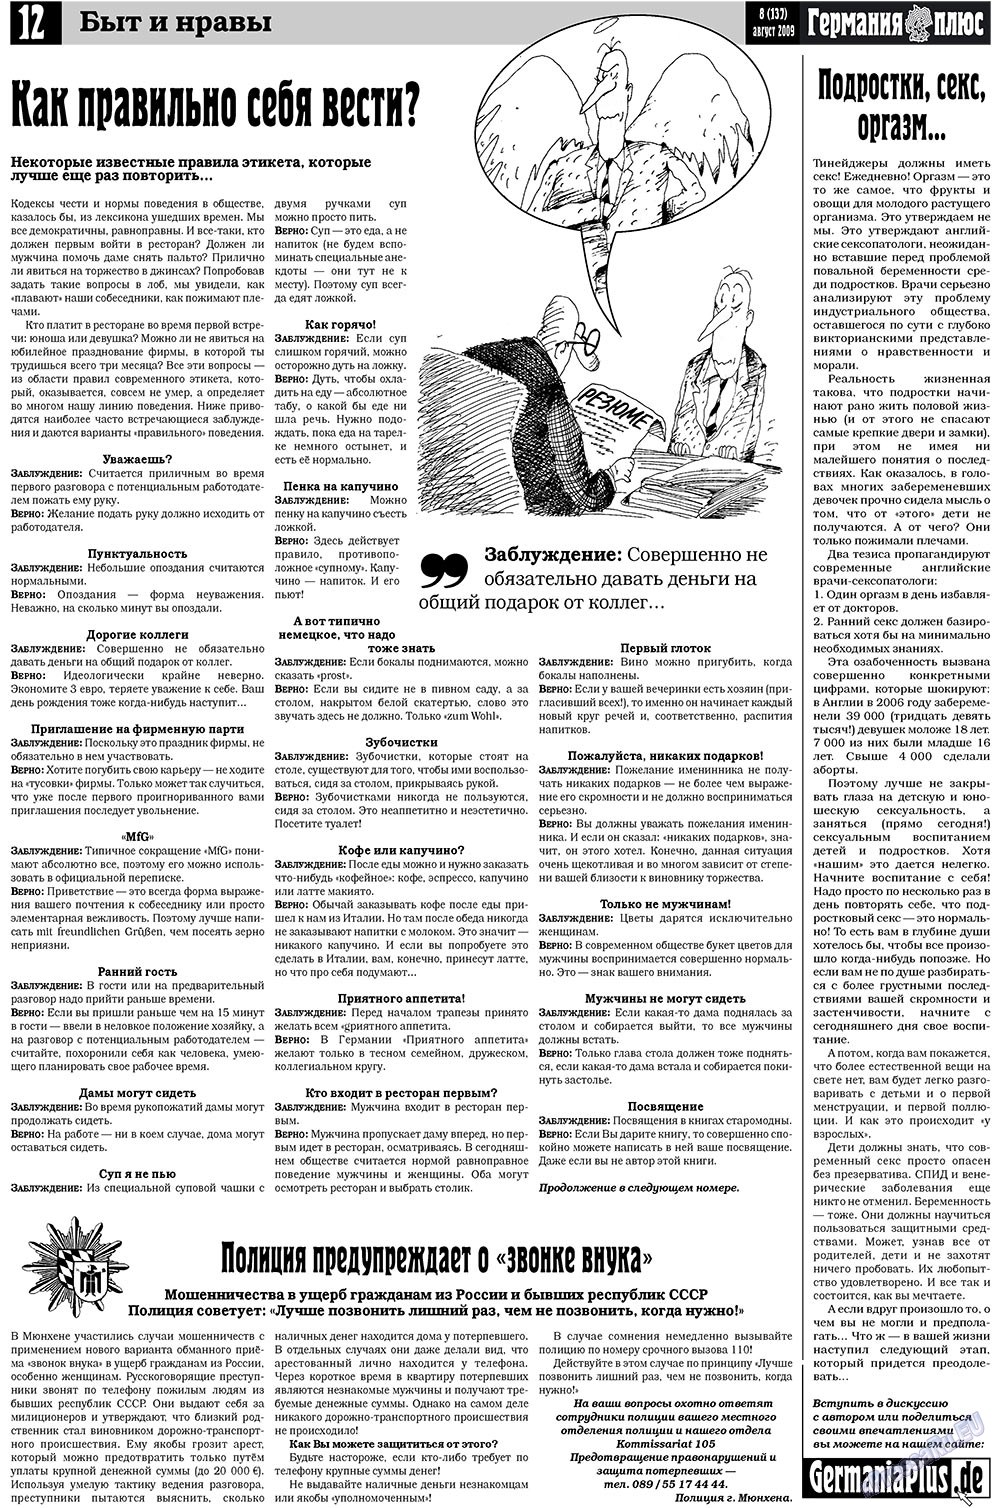 Германия плюс (газета). 2009 год, номер 8, стр. 16